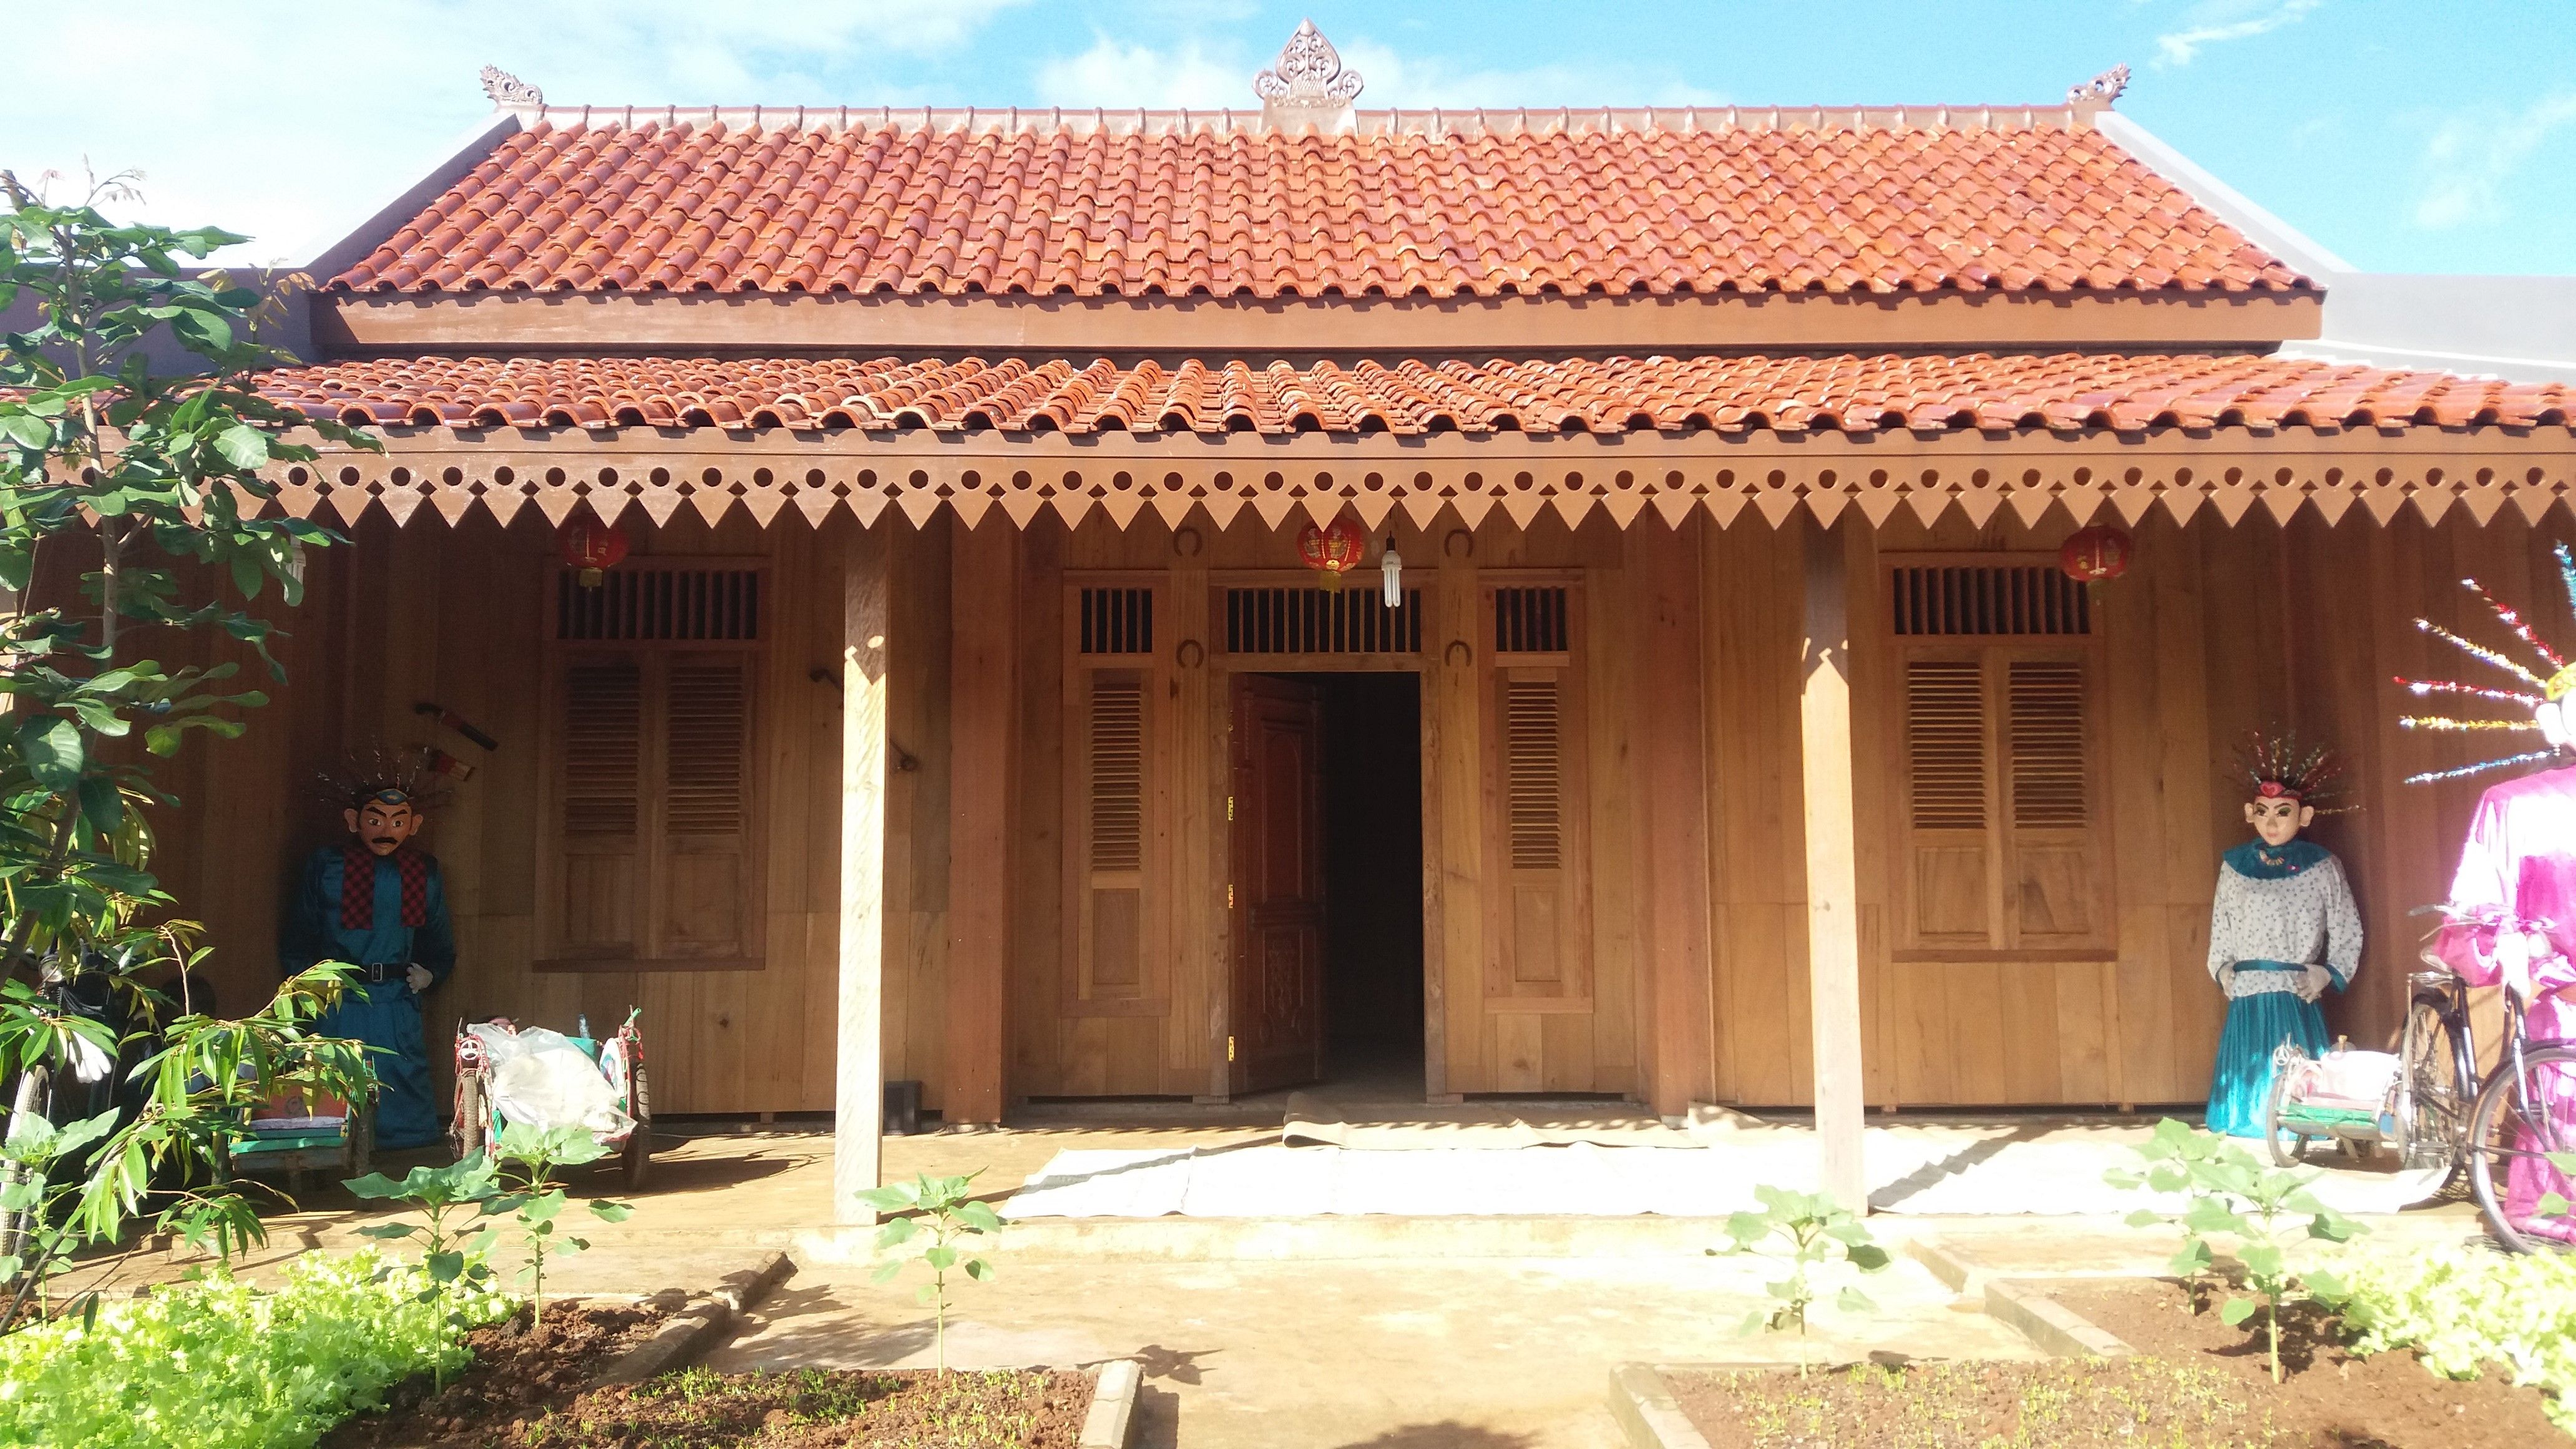  Rumah  tradisional Betawi  yang sudah sangat jarang 